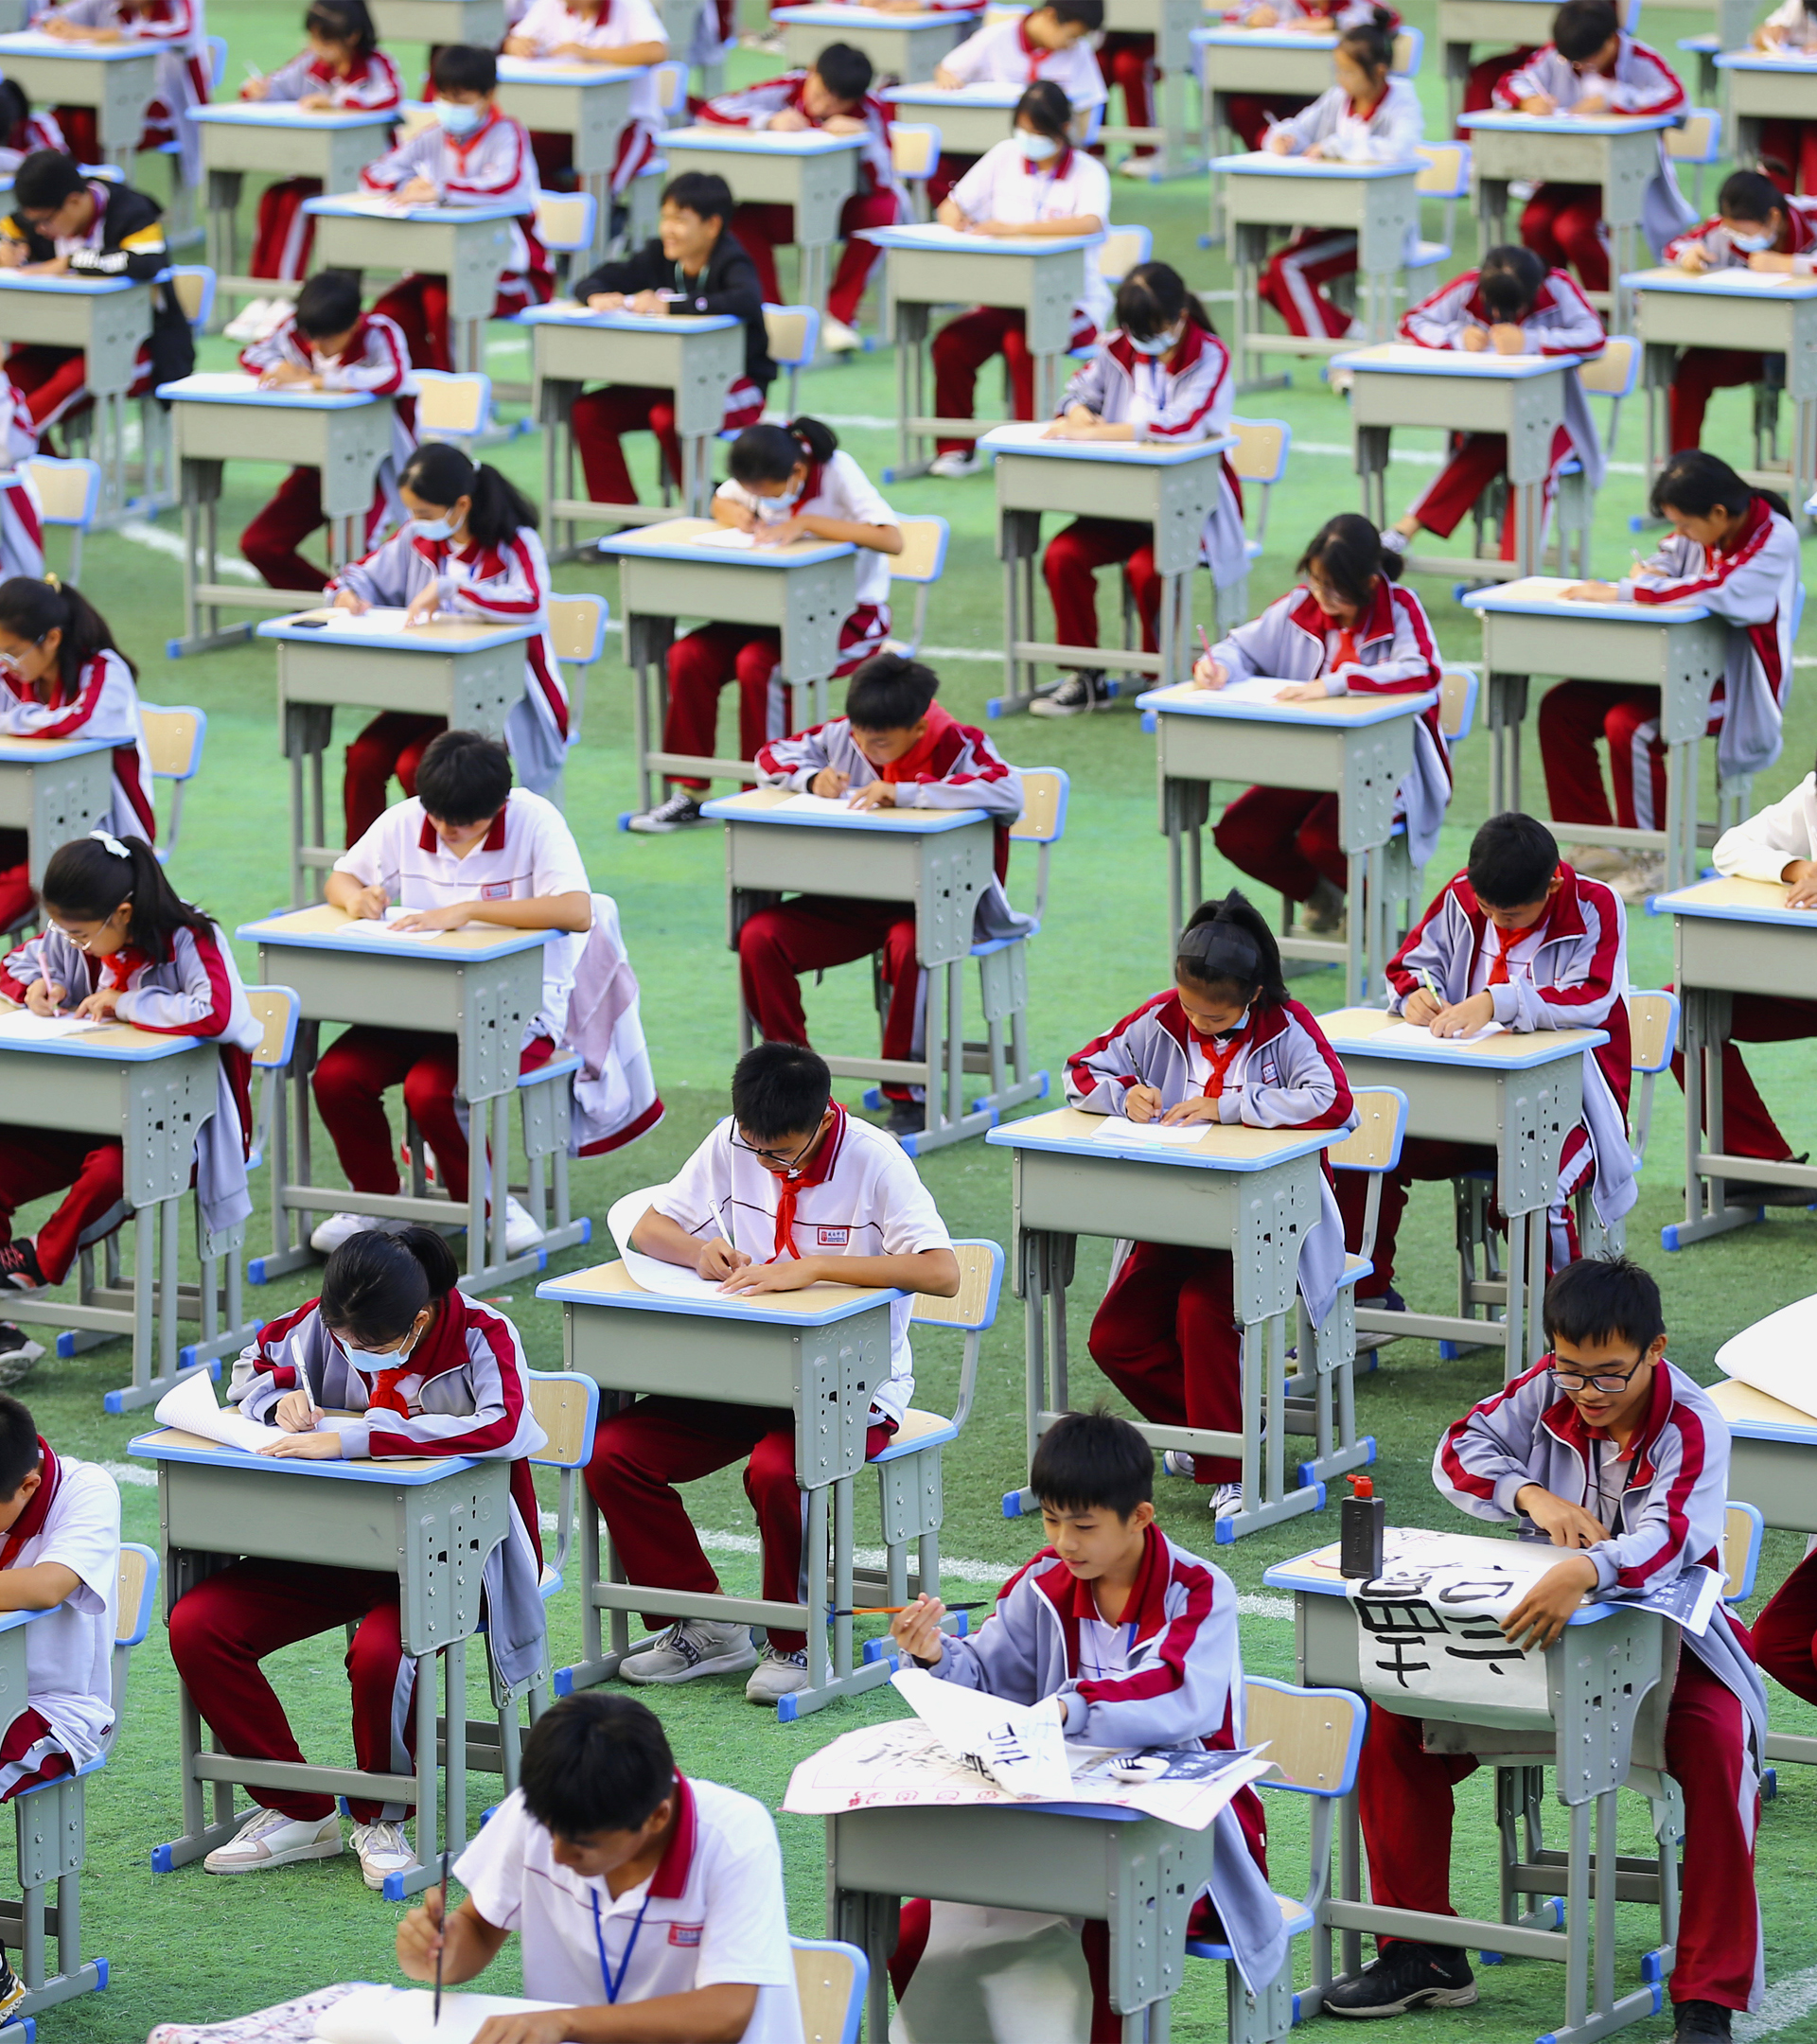 Miles de estudiantes chinos participan en un concurso de caligrafía en una escuela de la provincia de Hainan.